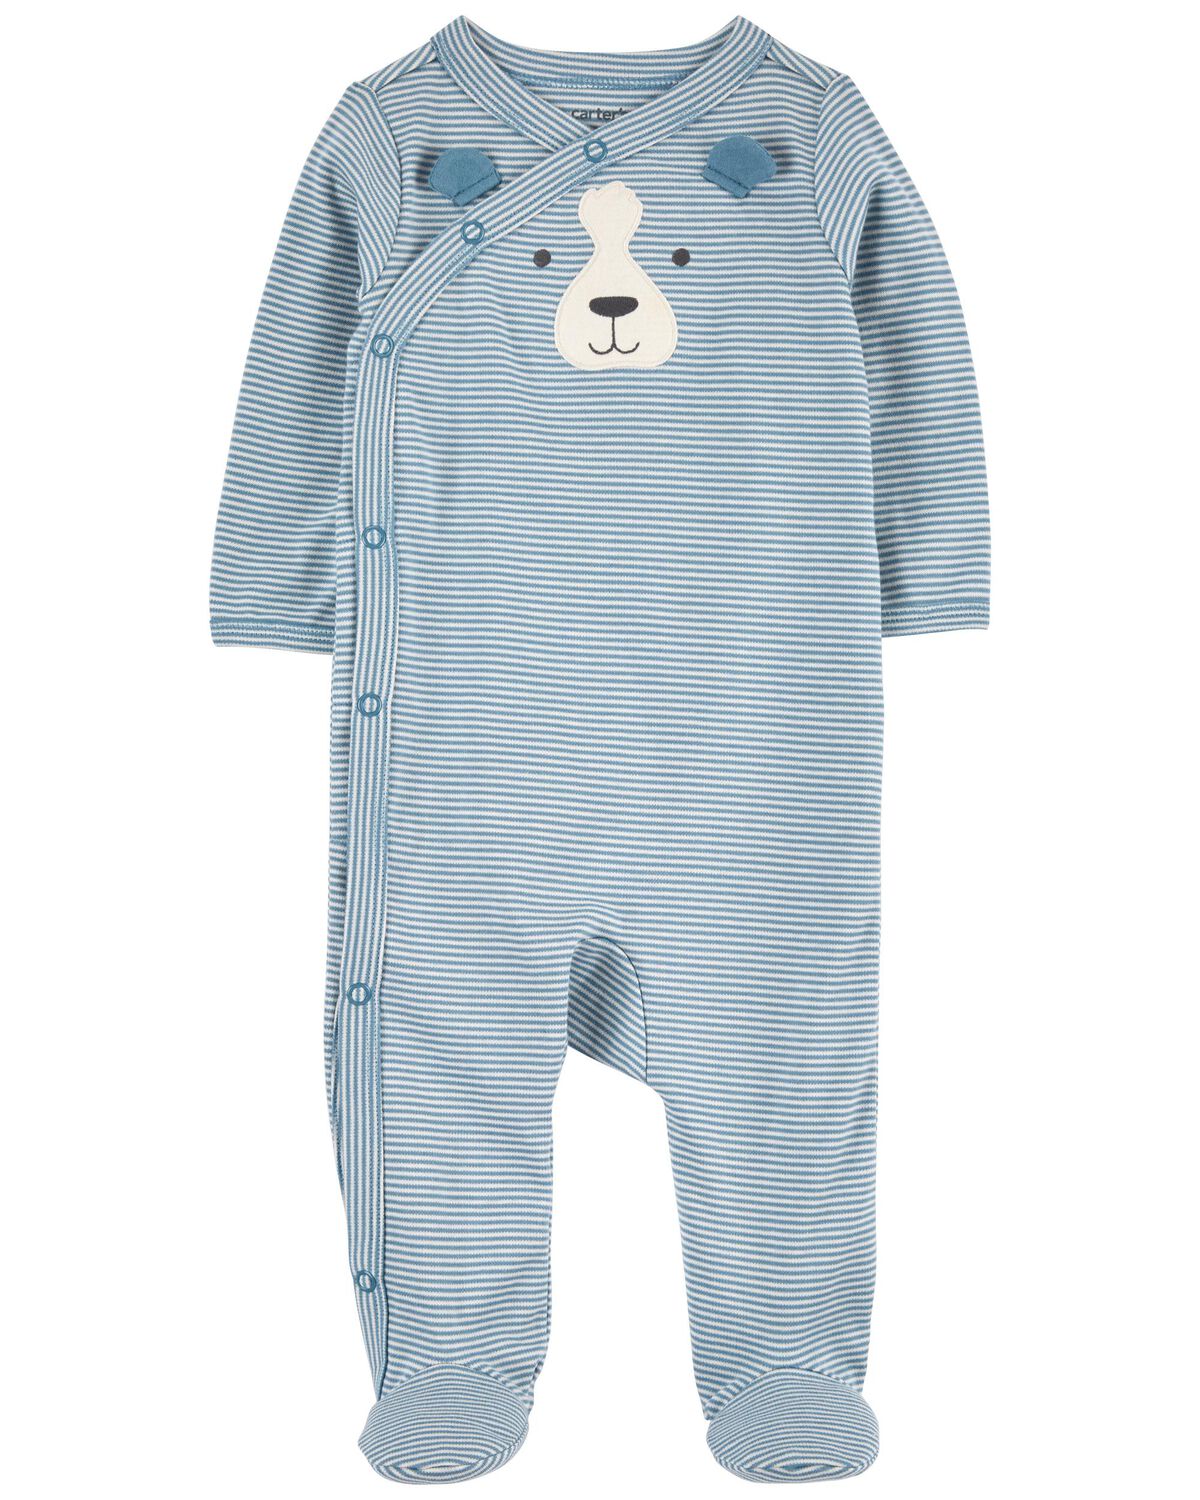 Baby Striped Dog Side-Snap Cotton Sleep & Play Pajamas